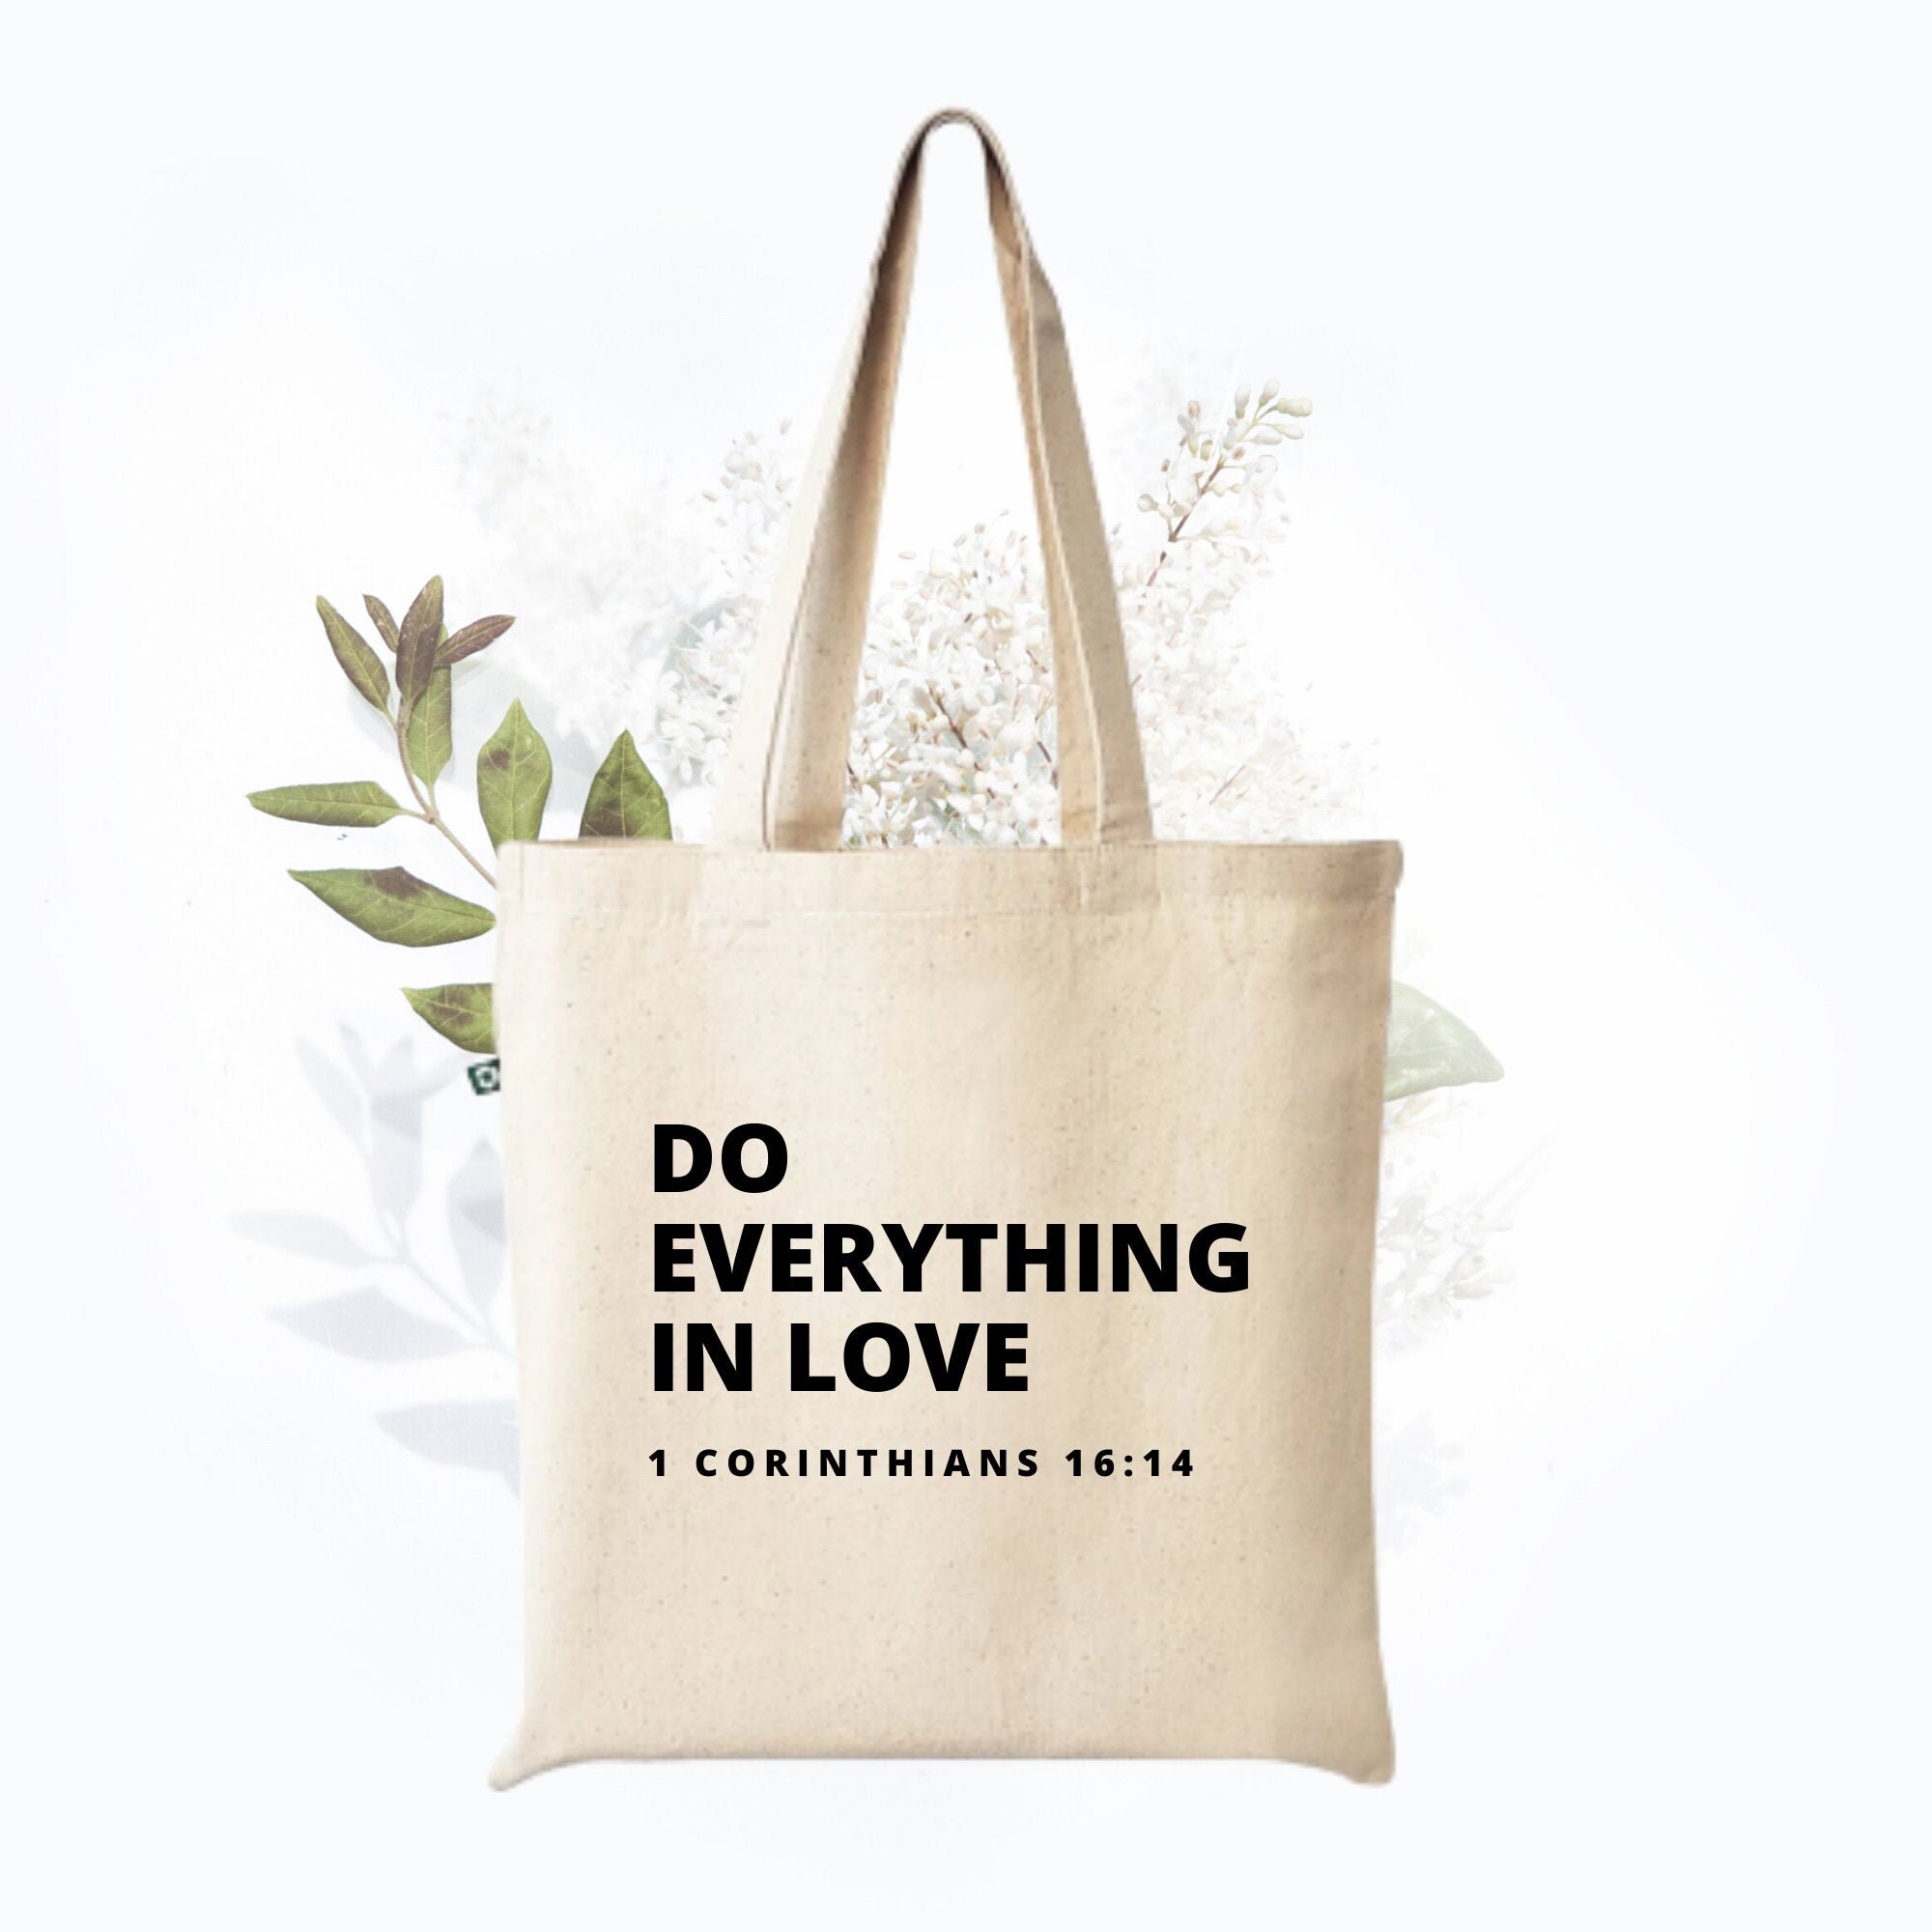 Christian Tote Bag, Bible Verse Tote Bag, Aesthetic Tote Bag - Inspire  Uplift